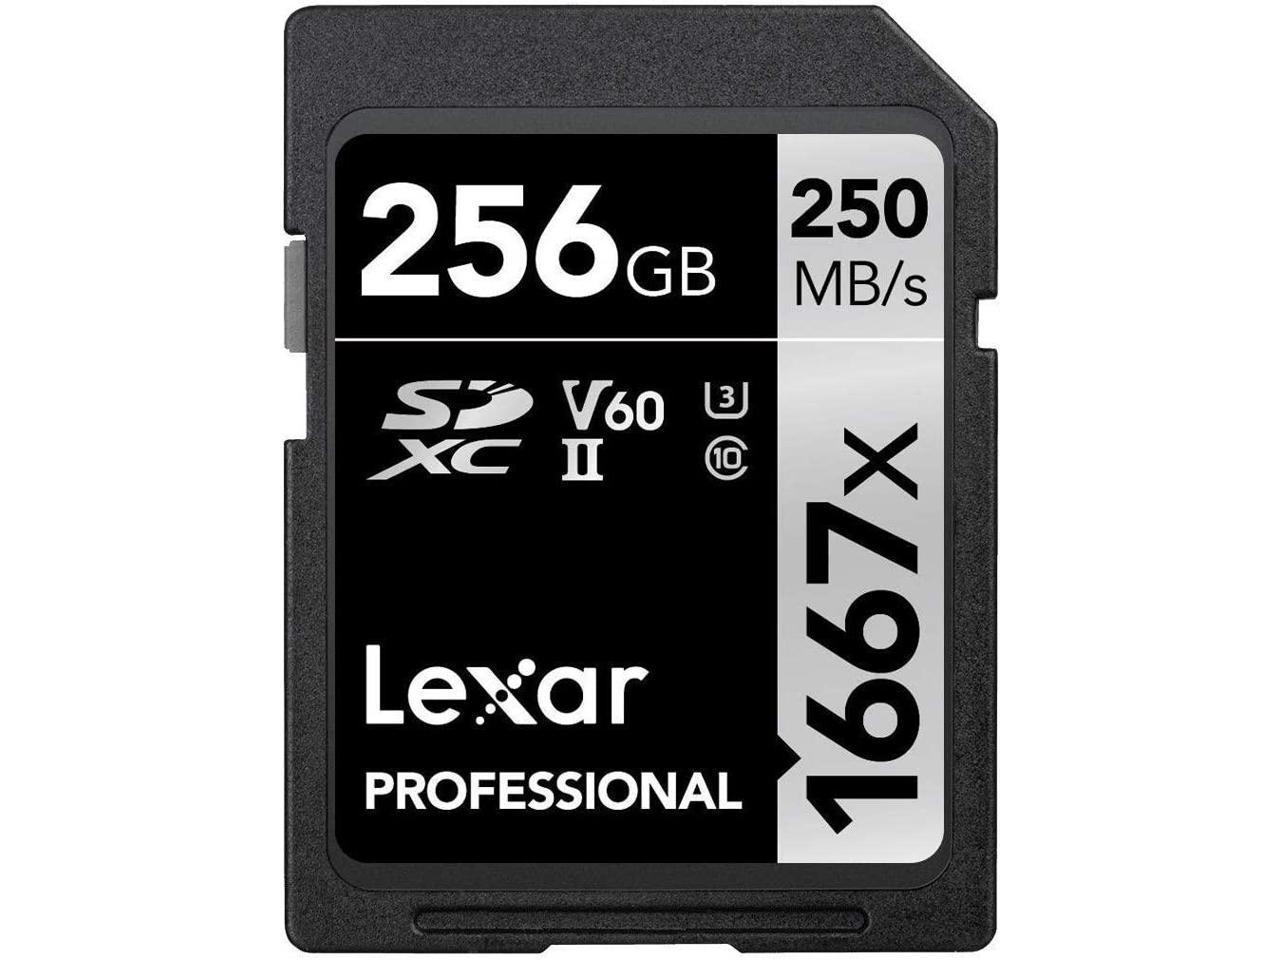 lexar memory card driver download for mac